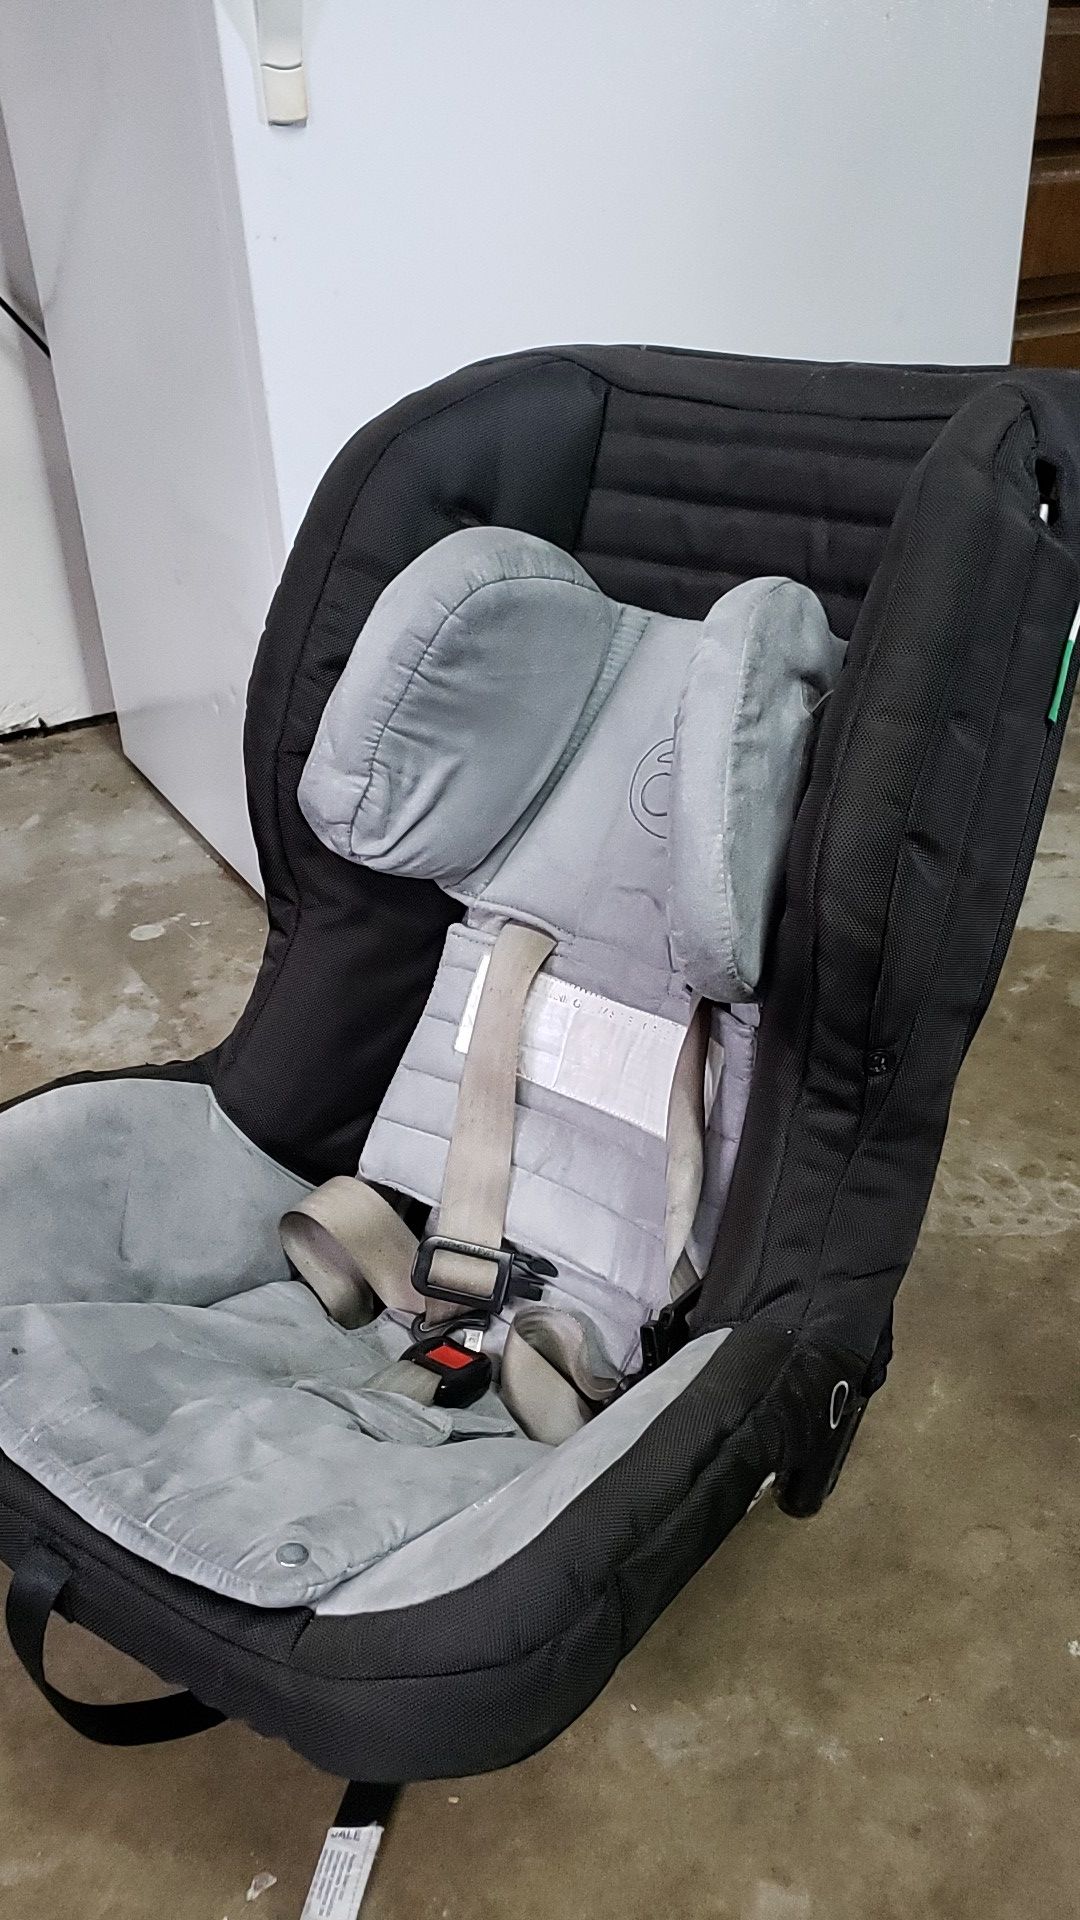 Orbit car seat